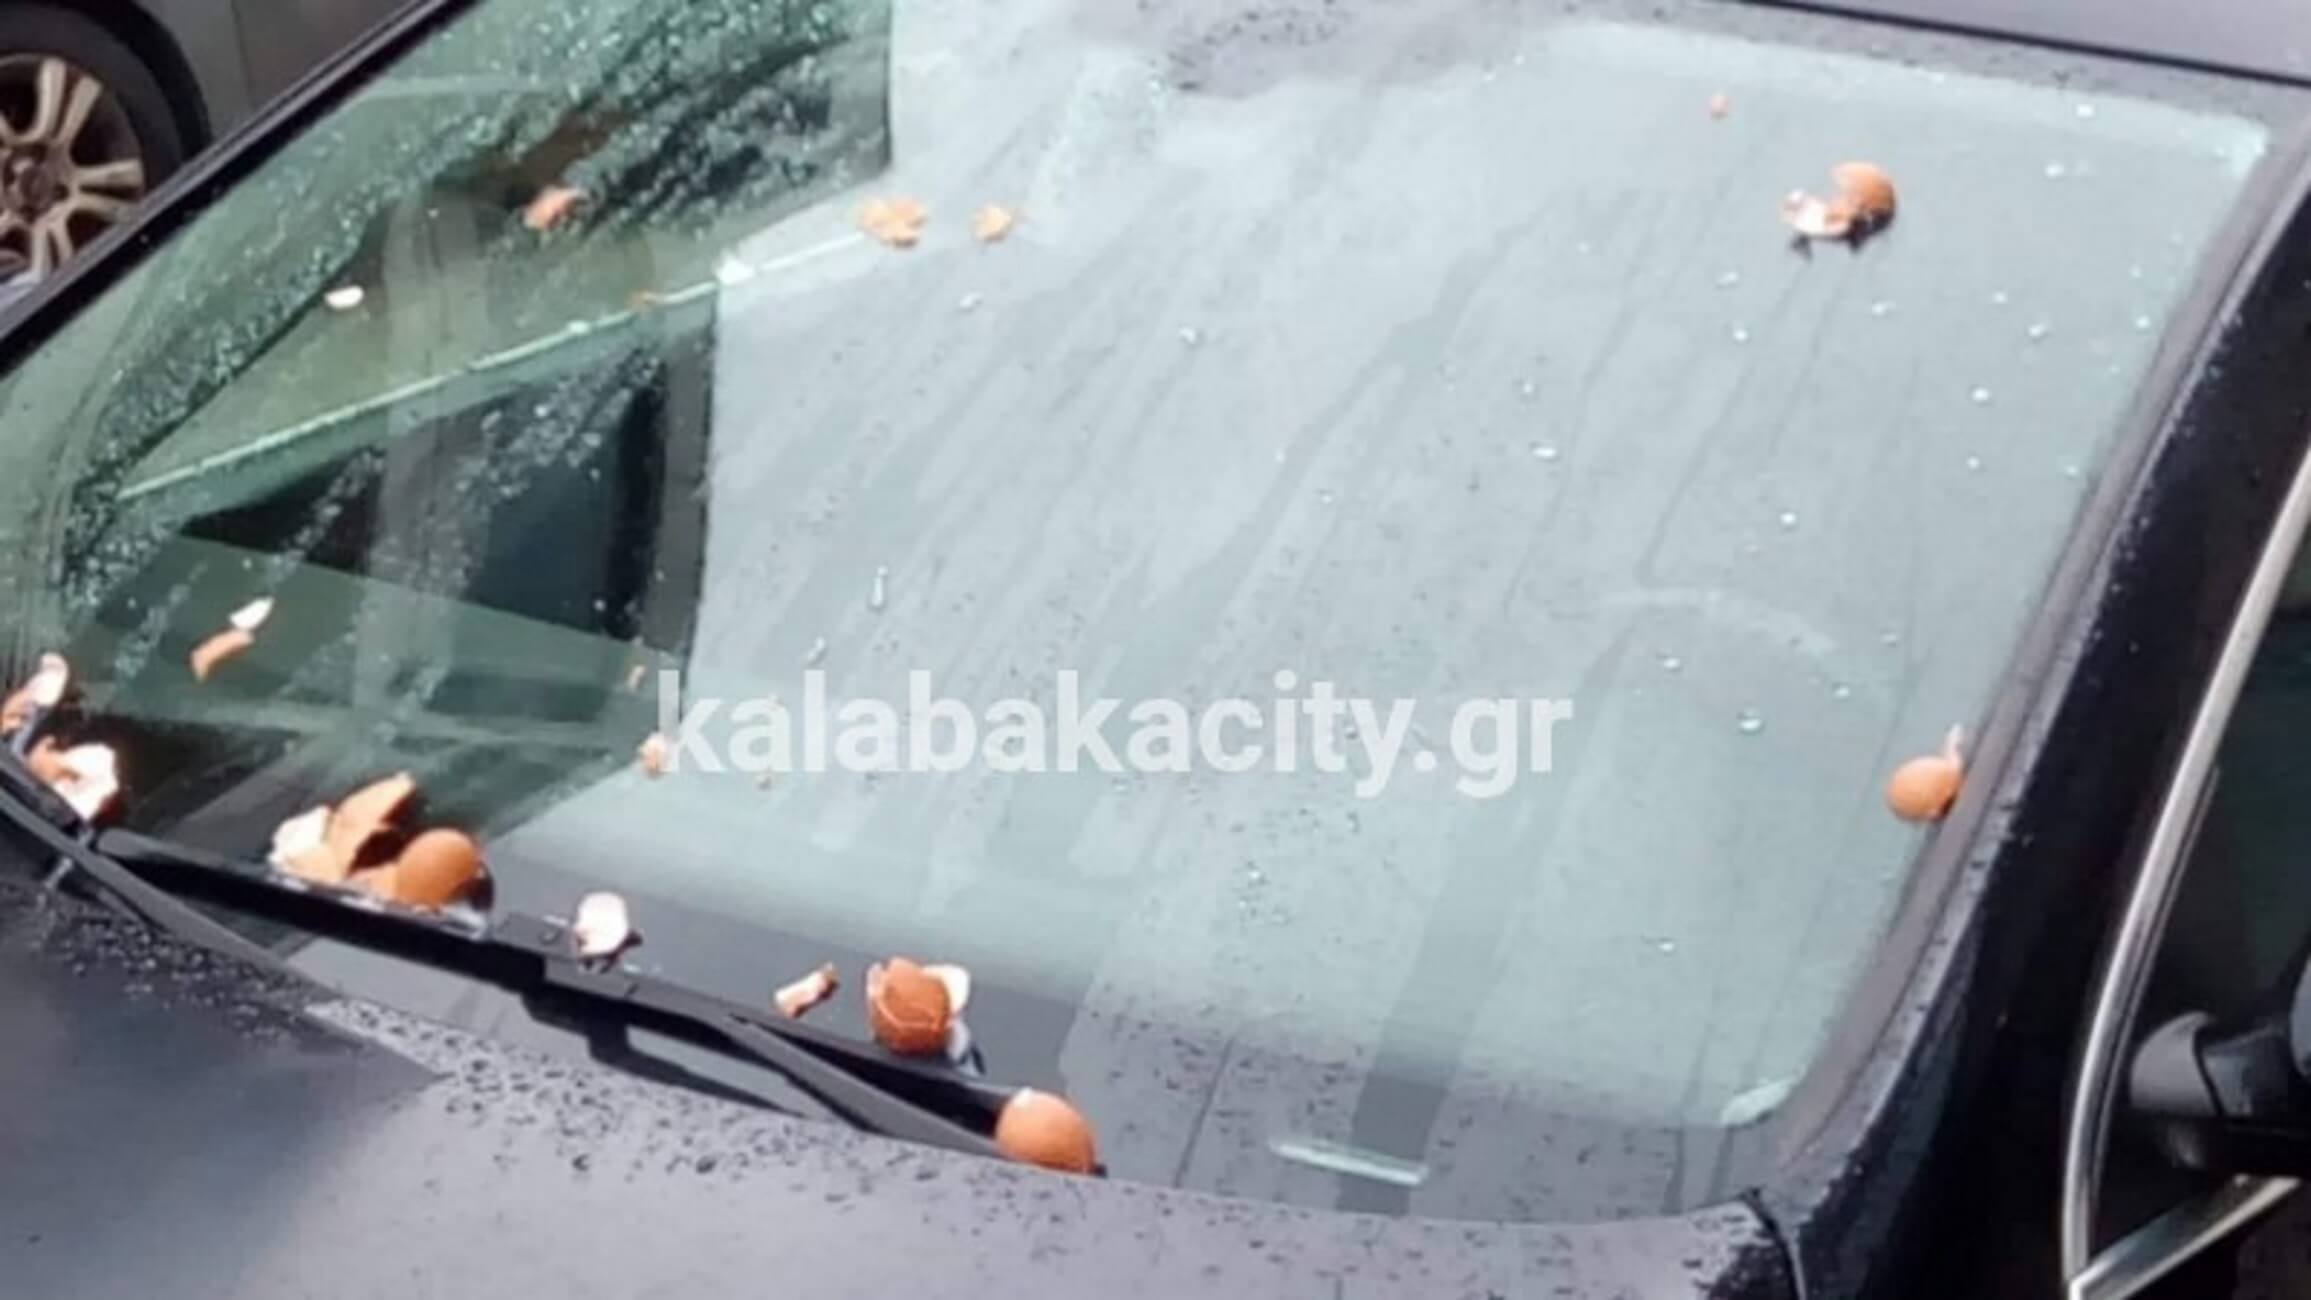 Μετέωρα: Αυγά στο αυτοκίνητο του δημάρχου – Το βρήκε σε αυτή την κατάσταση όταν επέστρεψε [pics]